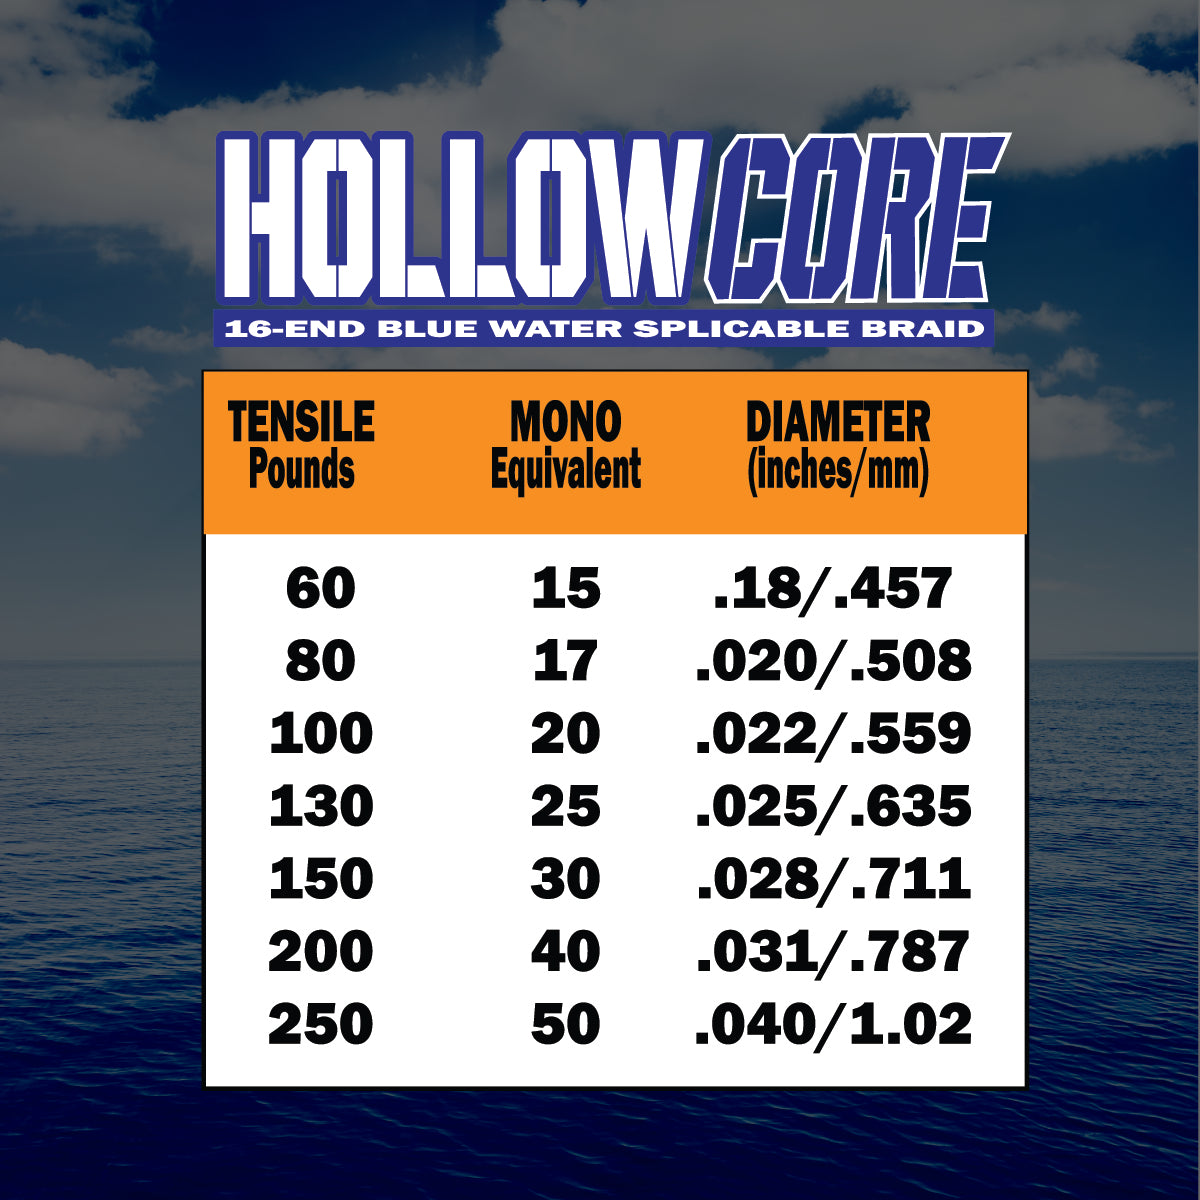 Hollow Core 130-250lb Test – FINS Braids